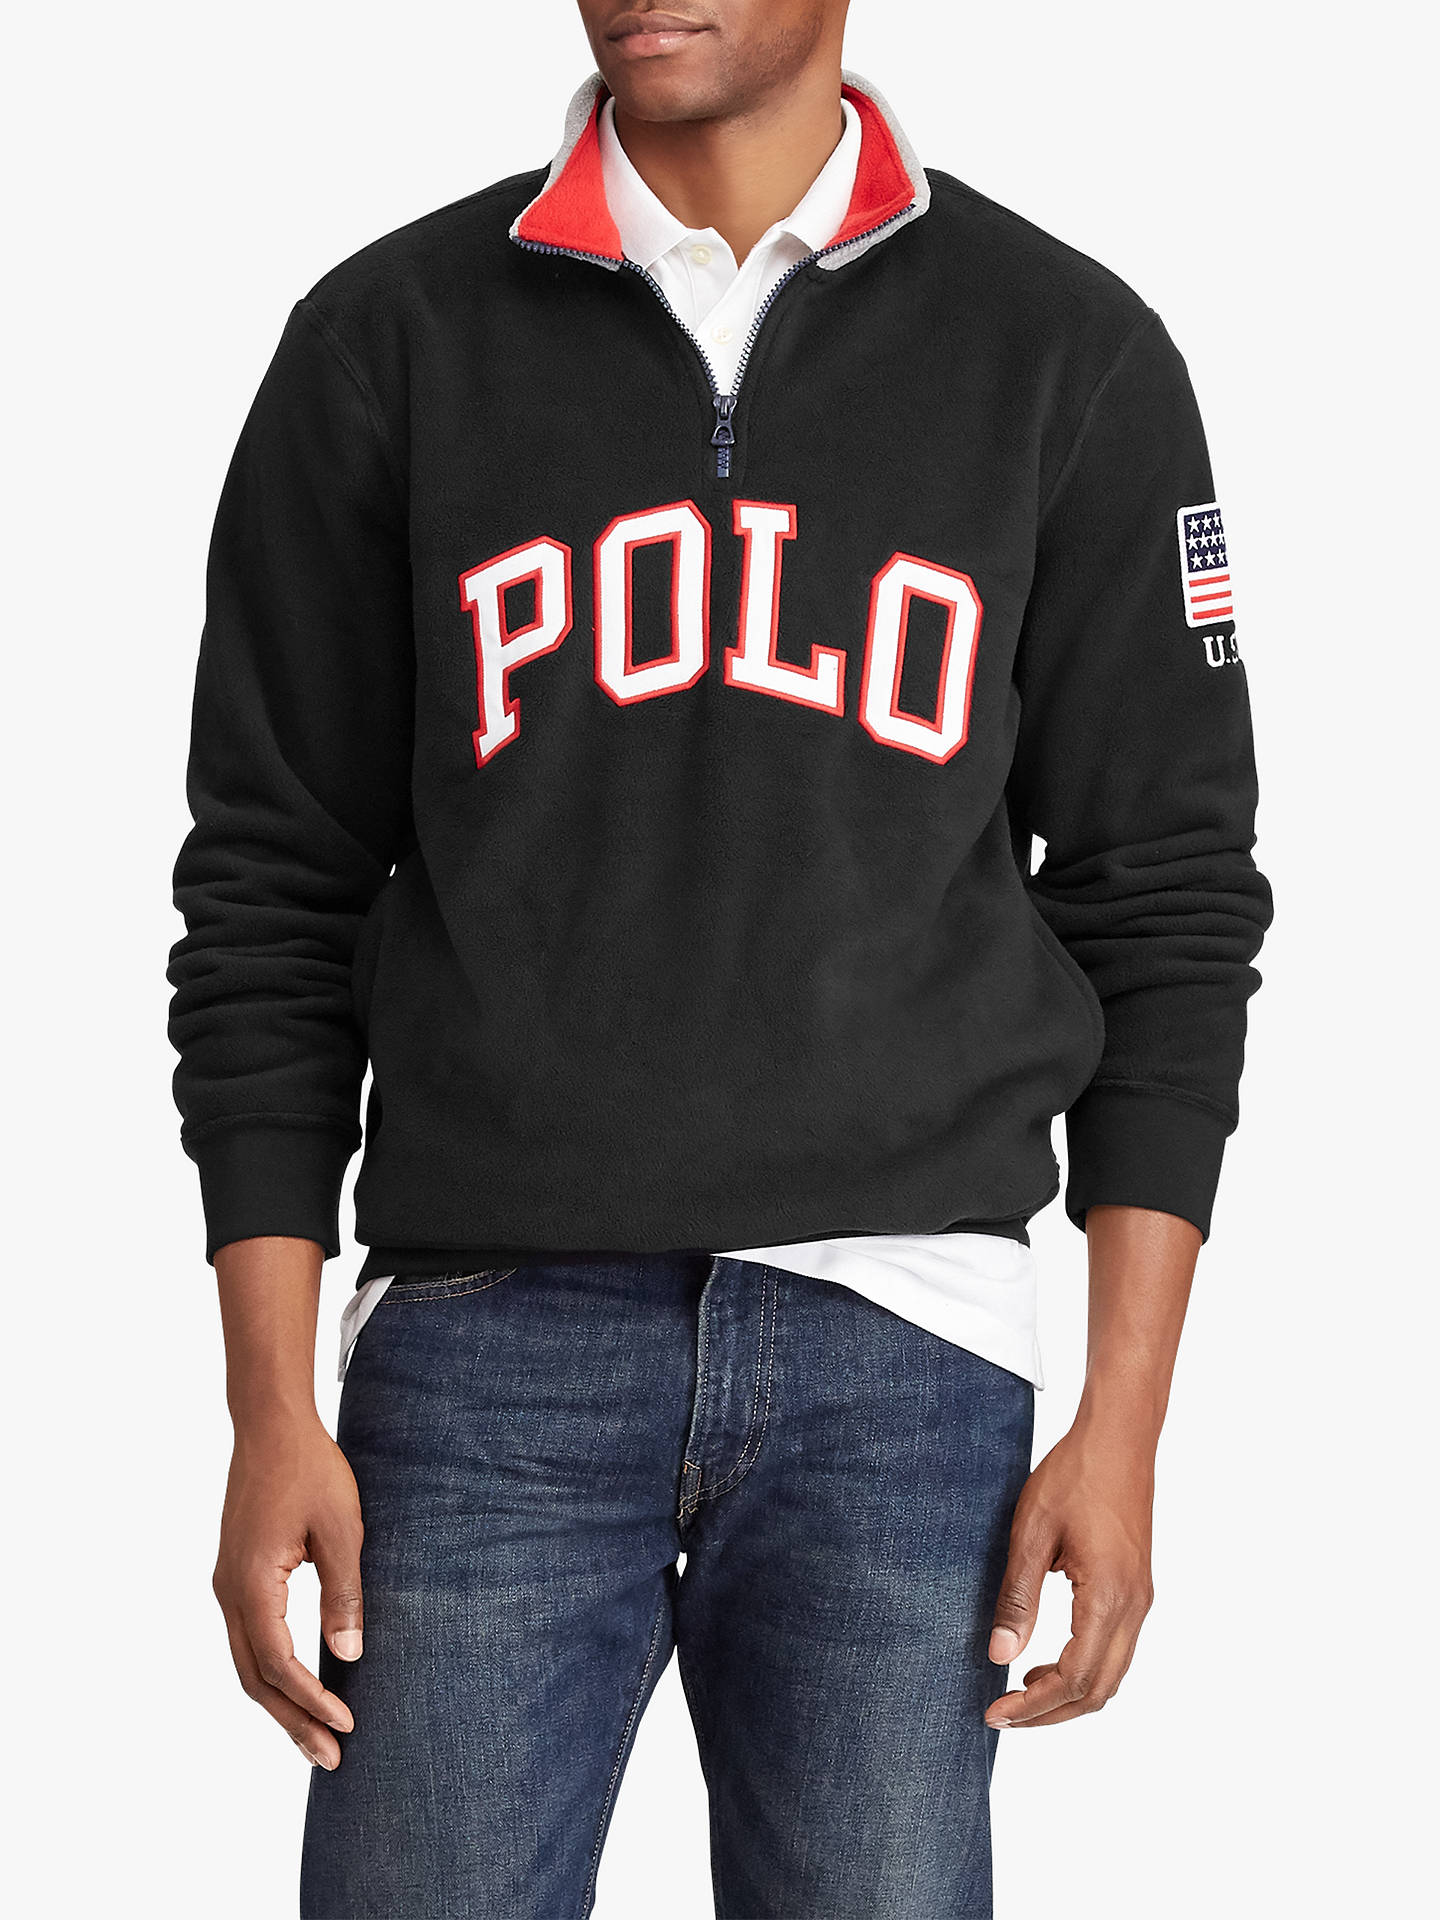 Polo Ralph Lauren Polo Half Zip Sweatshirt at John Lewis & Partners